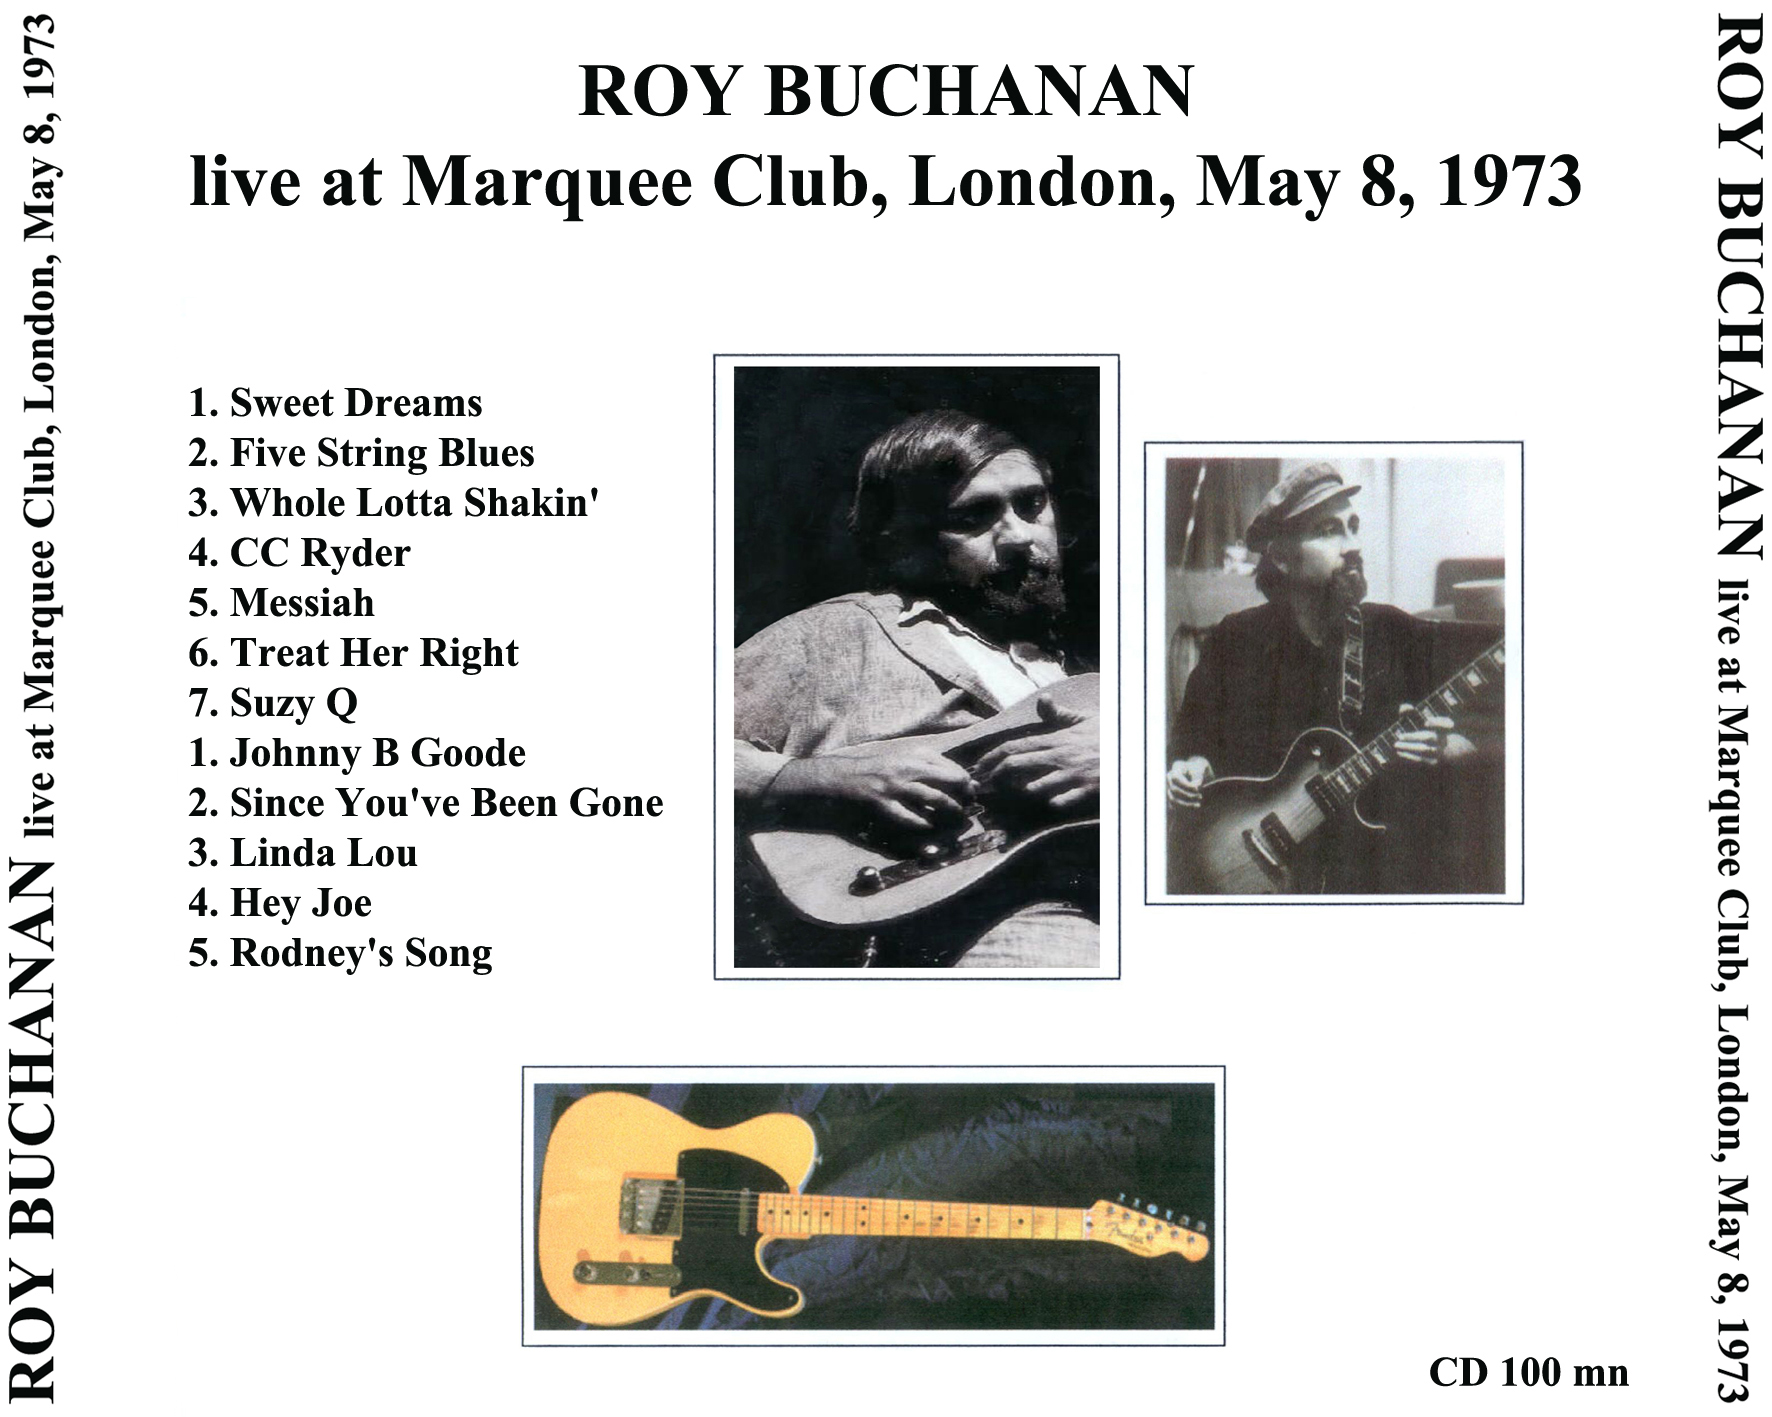 roy buchanan 1973 05 08 marquee club london enlarged tray 1 cd